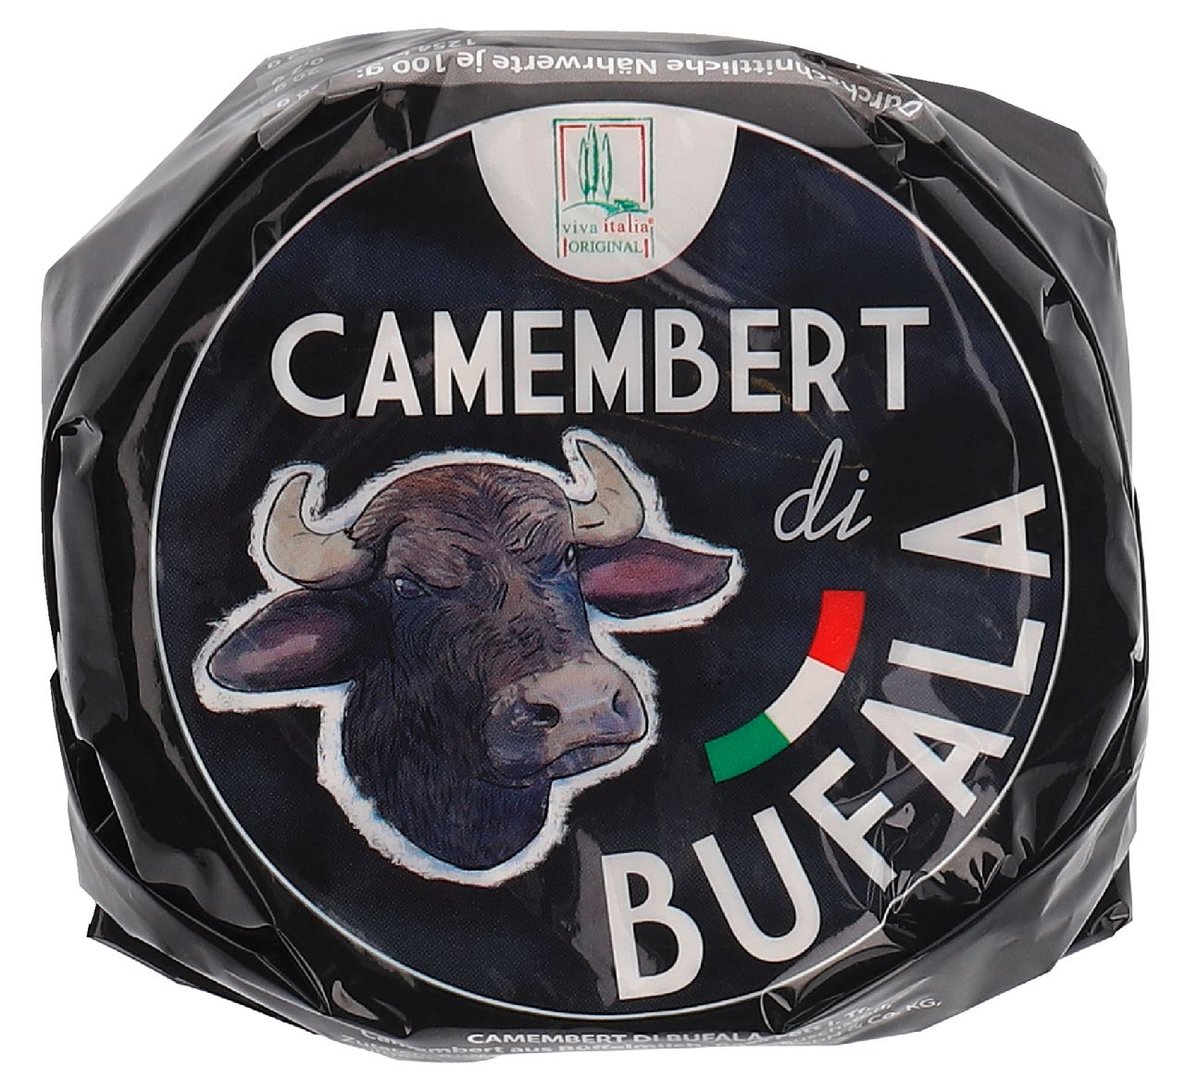 viva italia - Camembert di Bufala 64% - 250 g Stück